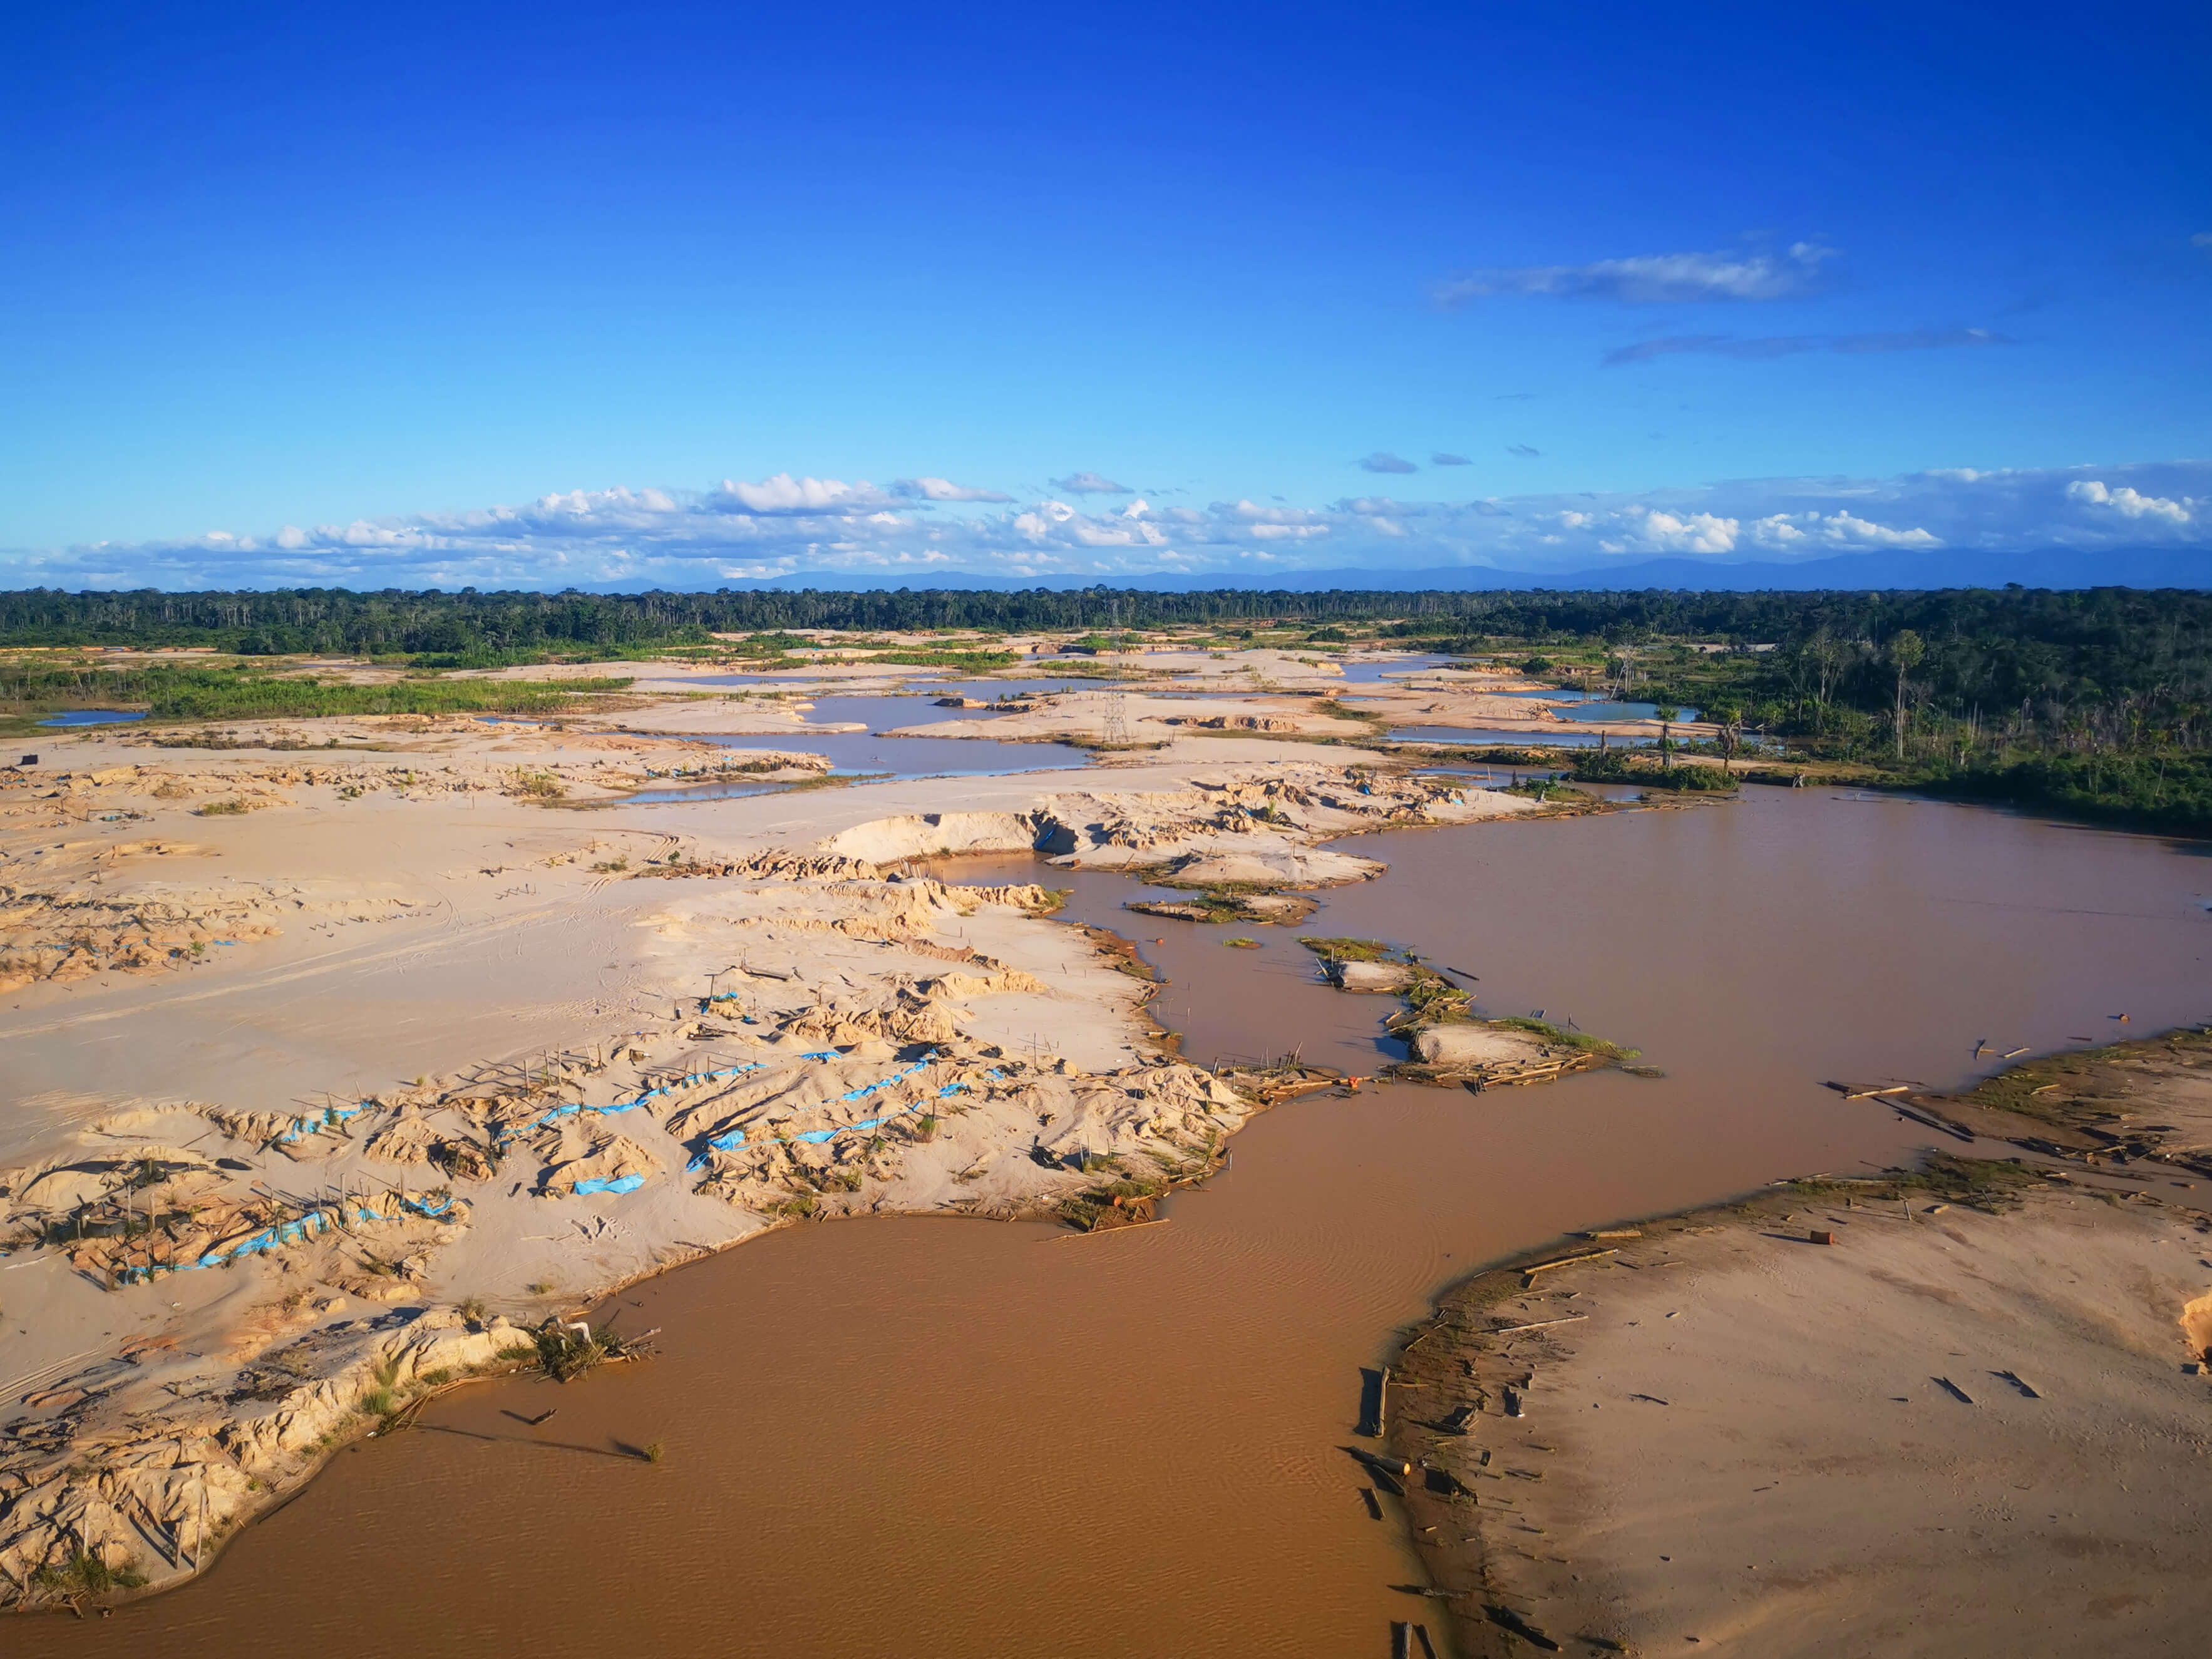 minería ilegal en la Amazonía peruana: diagnóstico y propuestas de acción